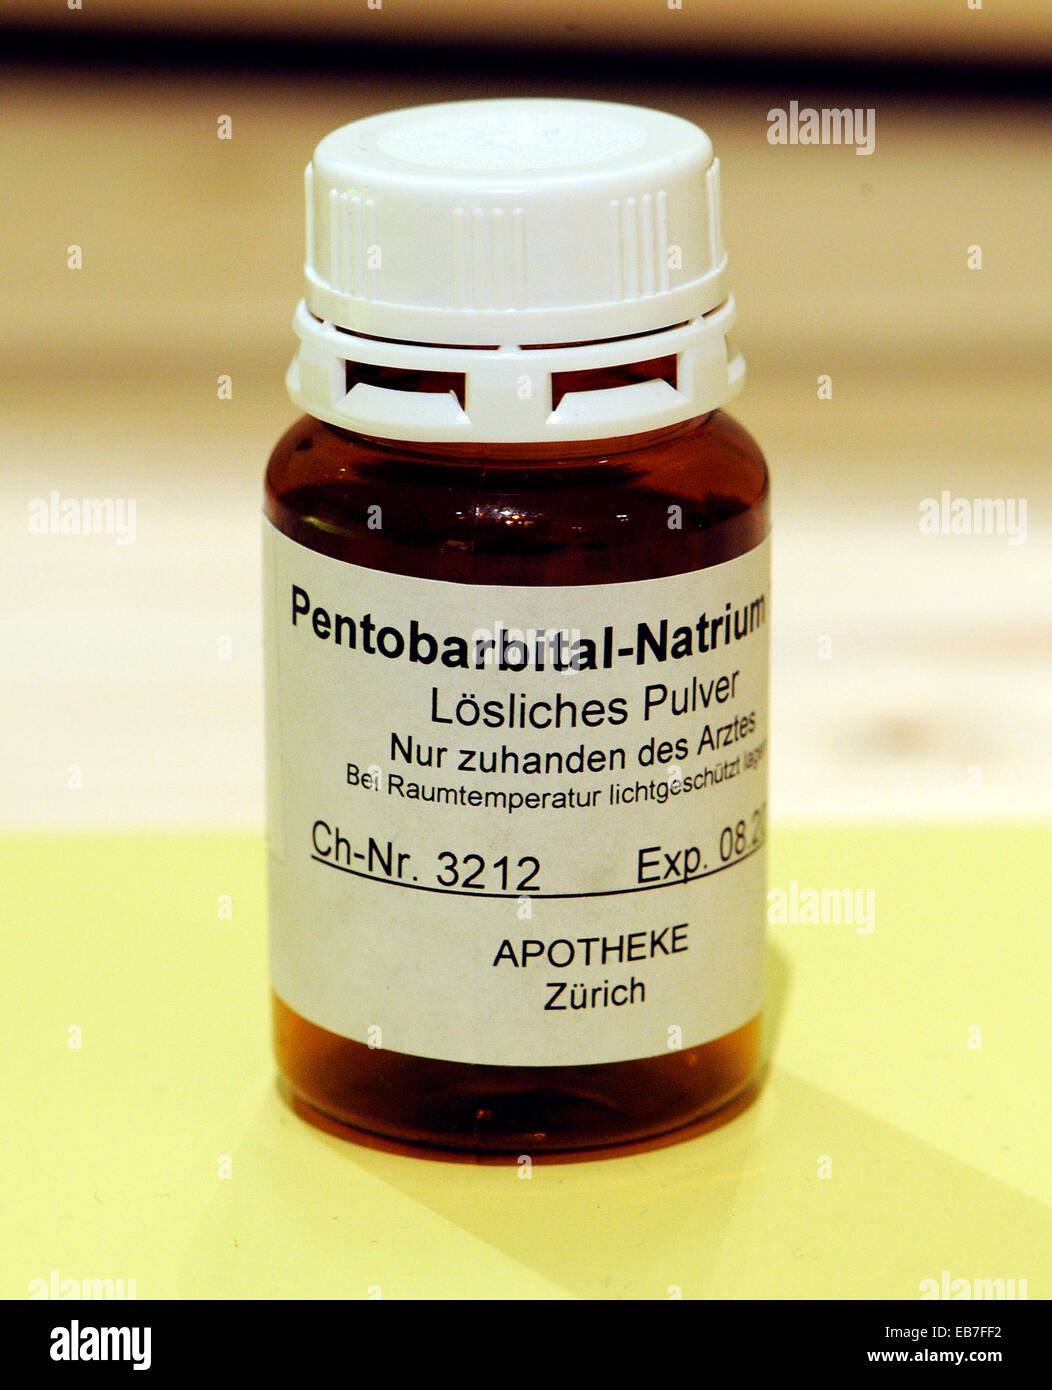 Una bottiglia con Pentobarbital-Natrium, che viene utilizzato in Svizzera per suicidio, visto in Freiburg in città-museo, 26 aprile 2012. Foto Stock